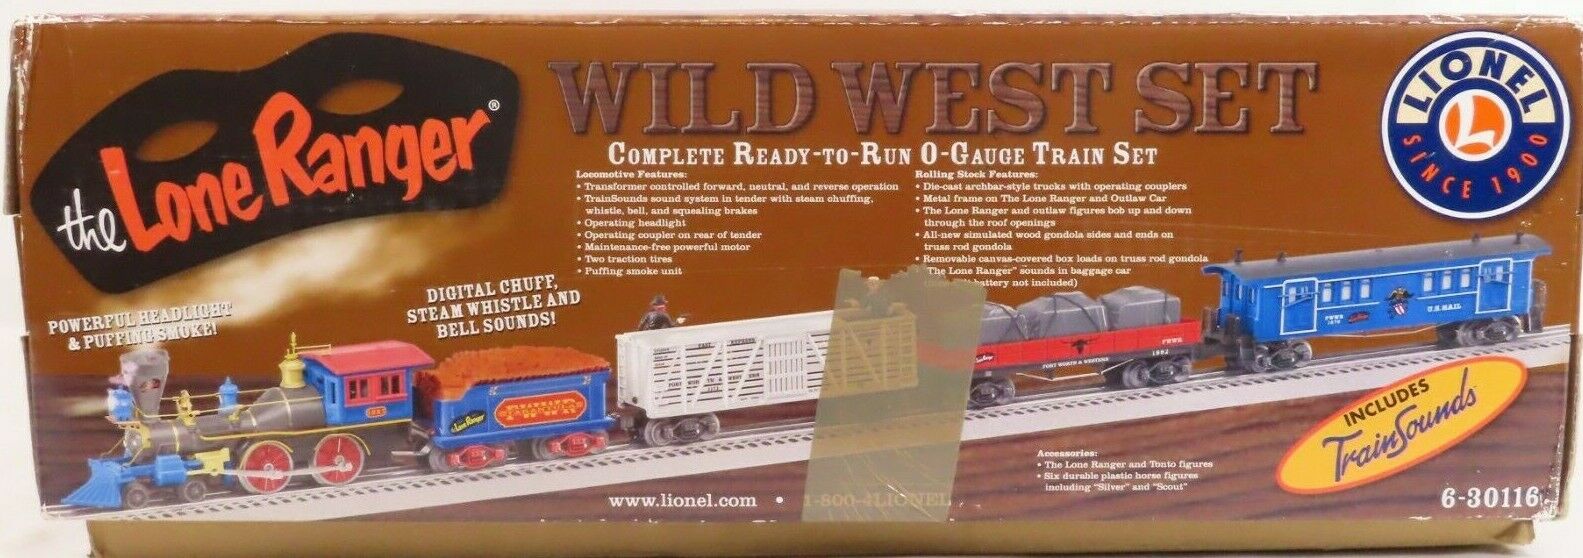 Lionel 6-30116 The Lone Ranger Wild Wild West Set  LN